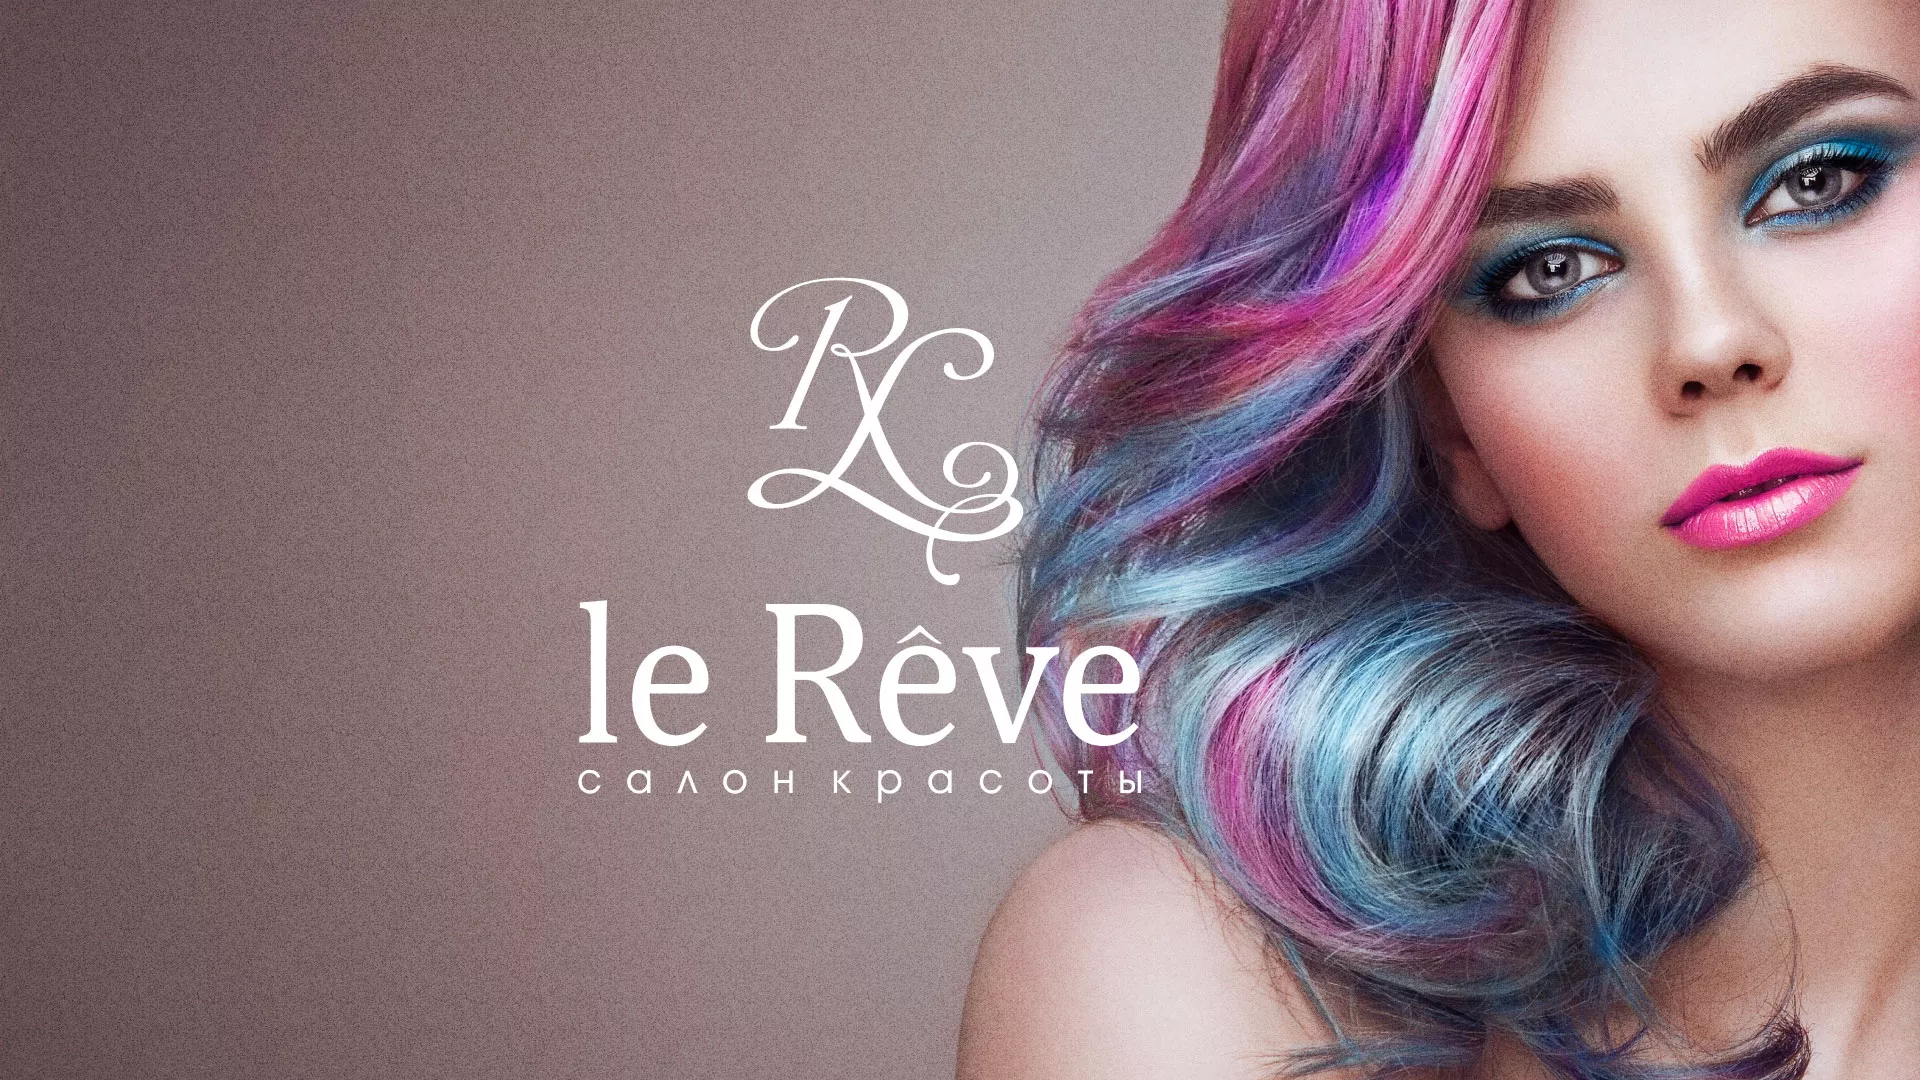 Создание сайта для салона красоты «Le Reve» в Суворове